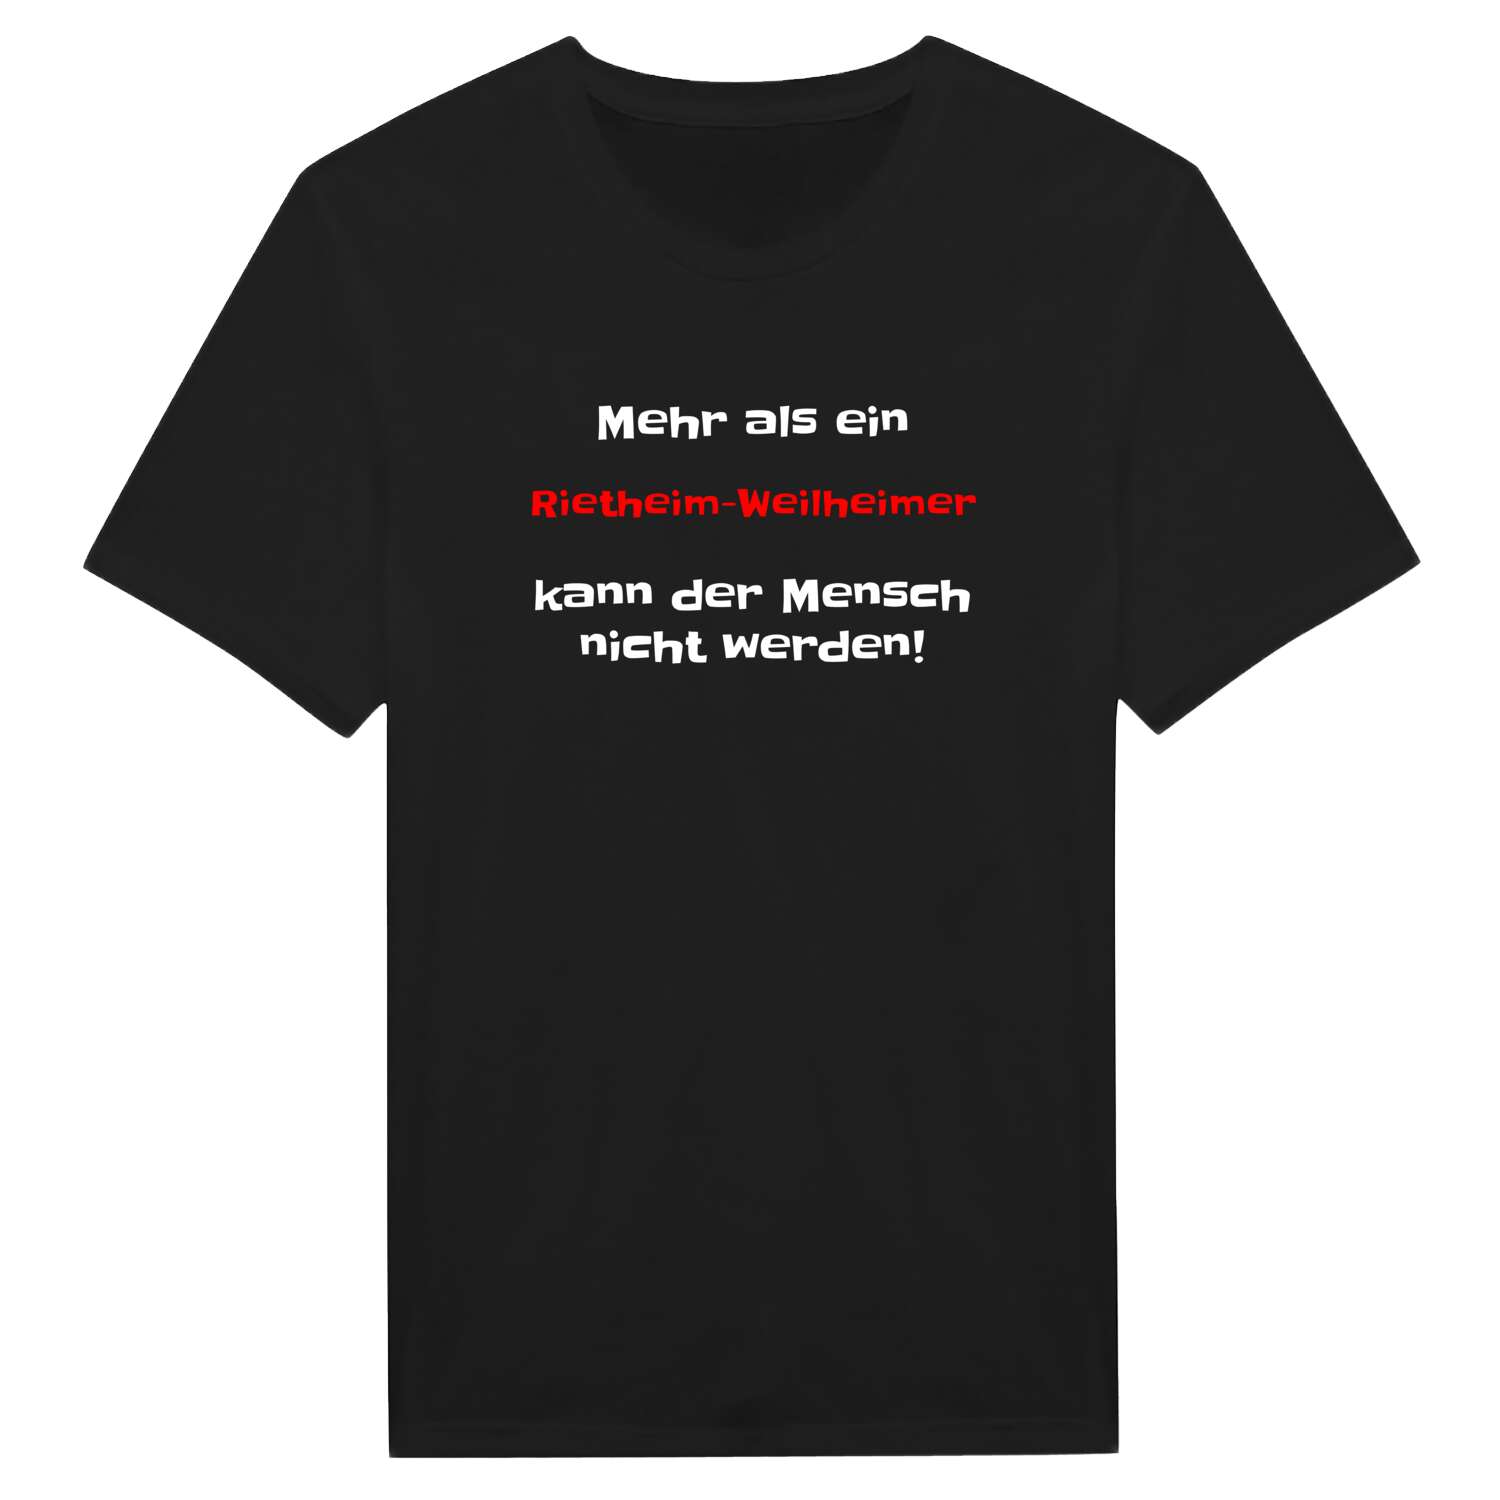 Rietheim-Weilheim T-Shirt »Mehr als ein«